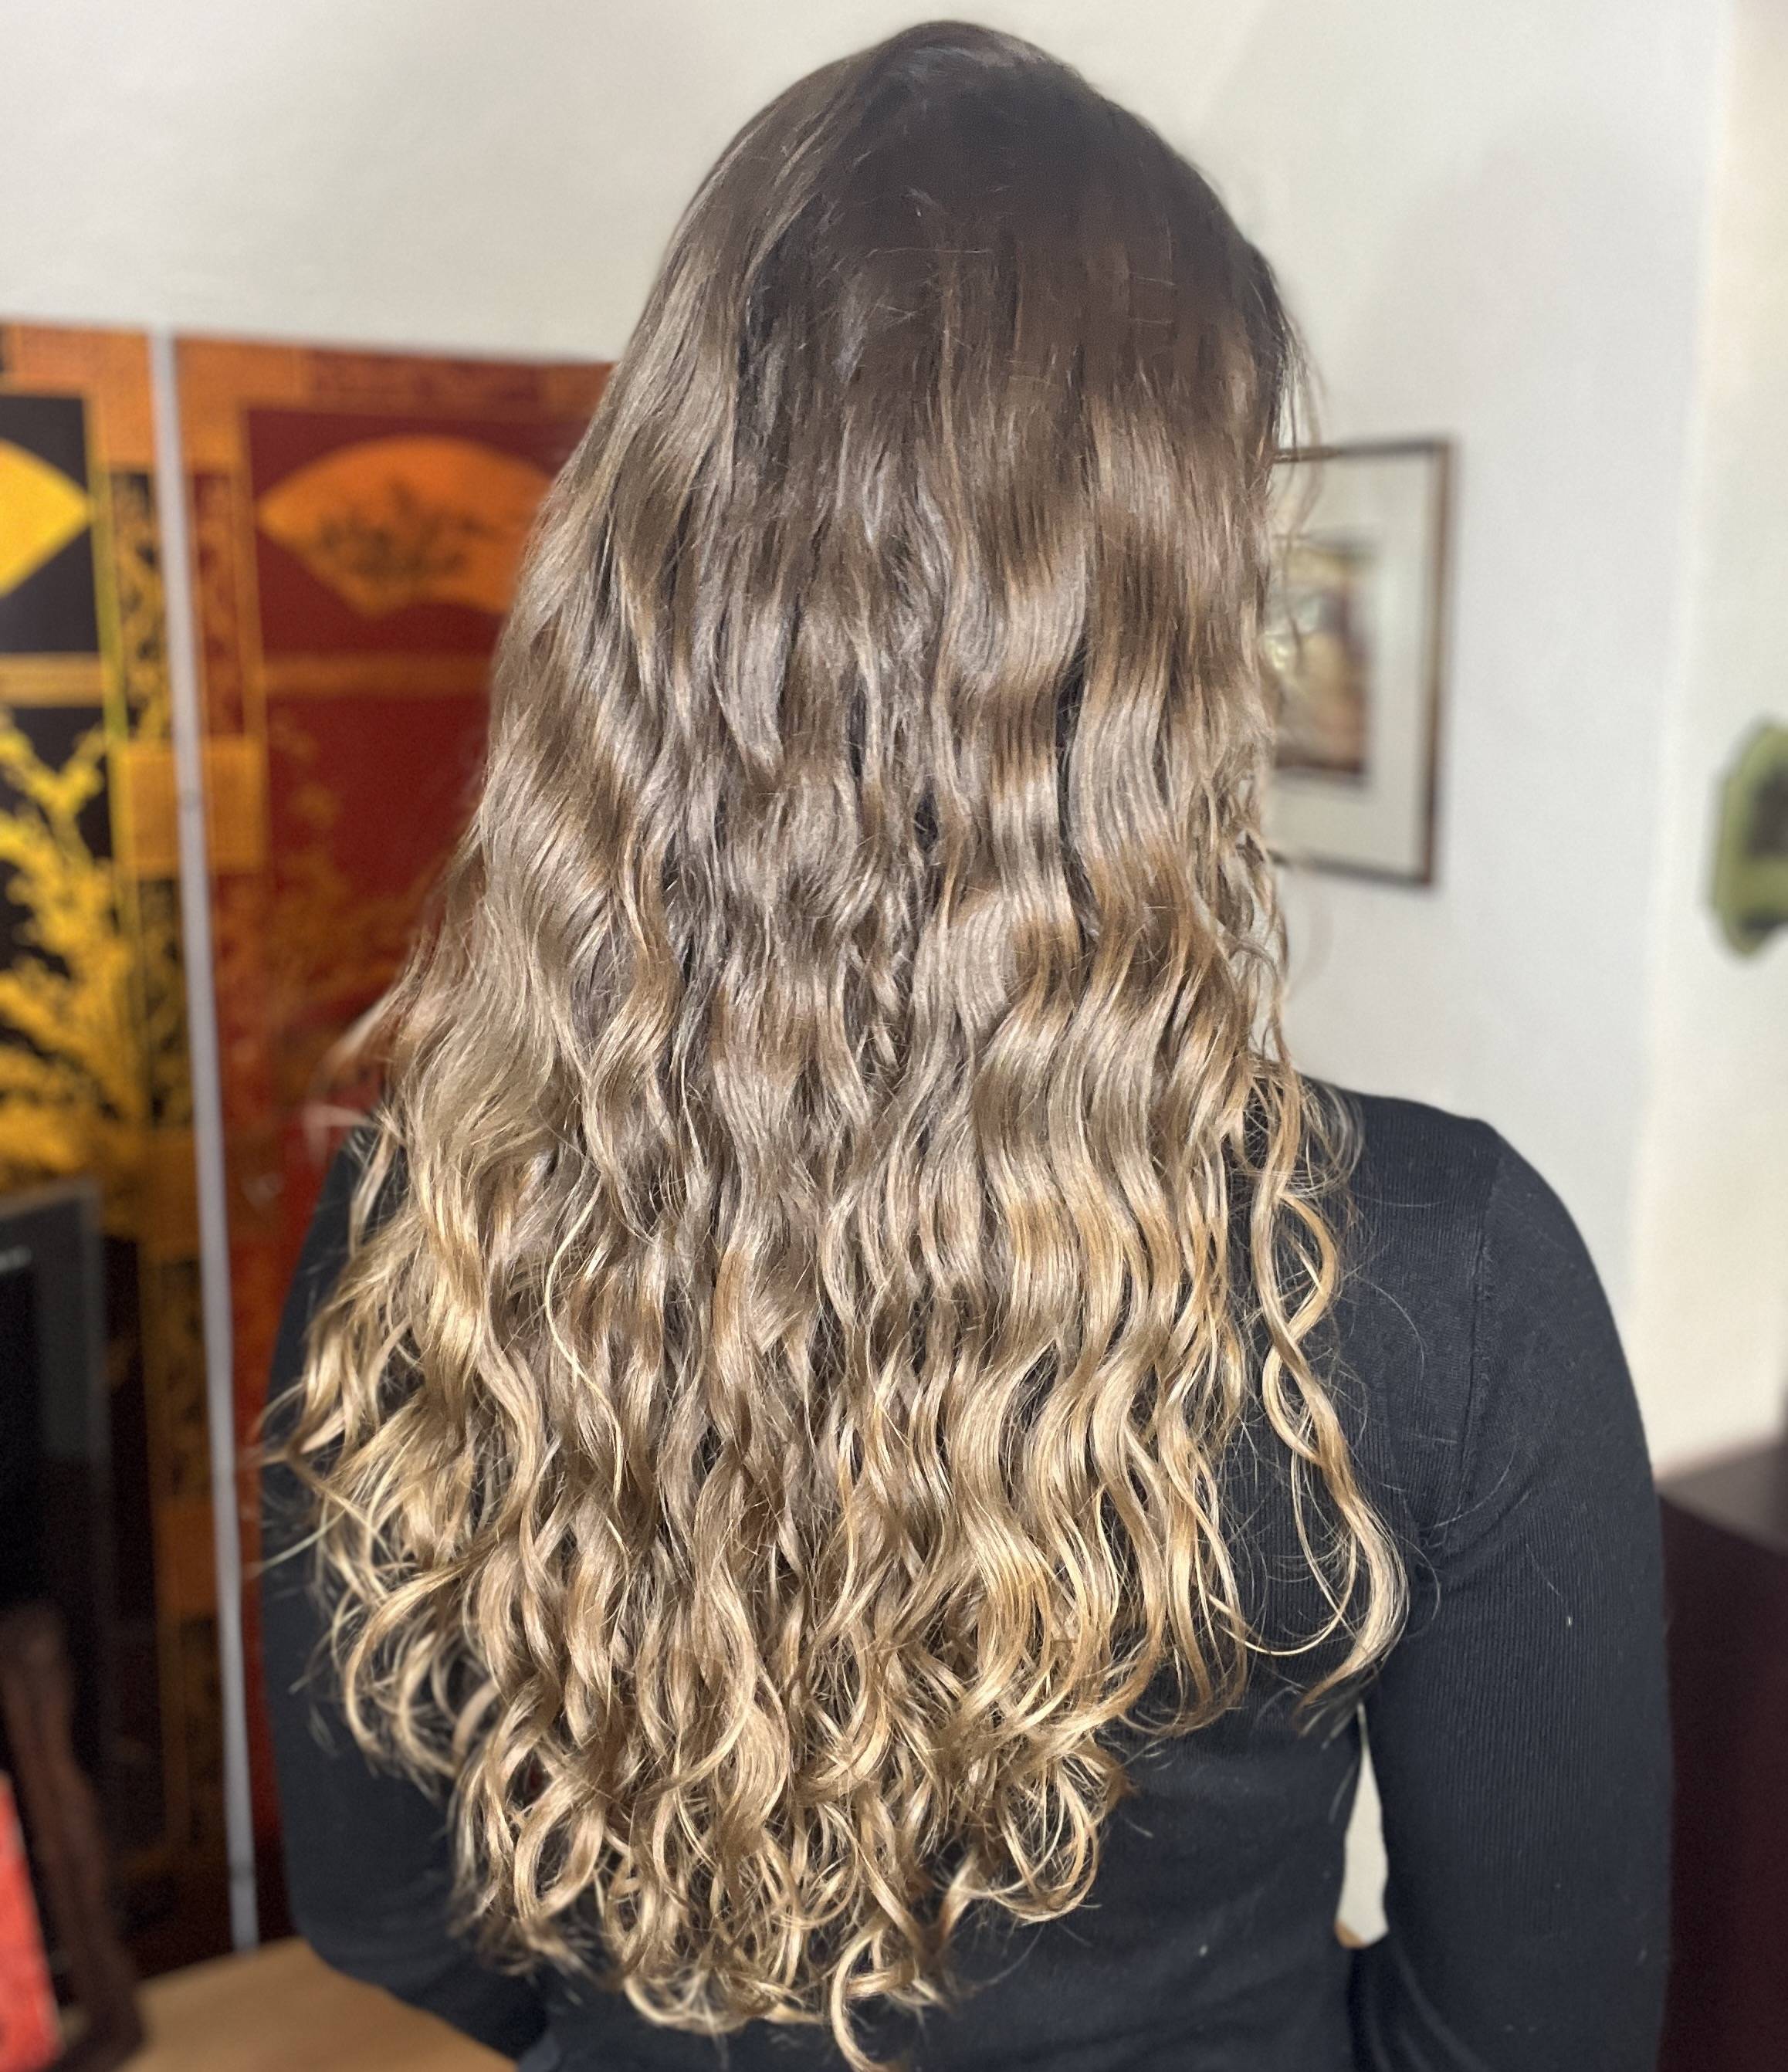 Cheveux ondulés : 6 astuces pour bien les définir et les faire tenir –  Helssy Hair